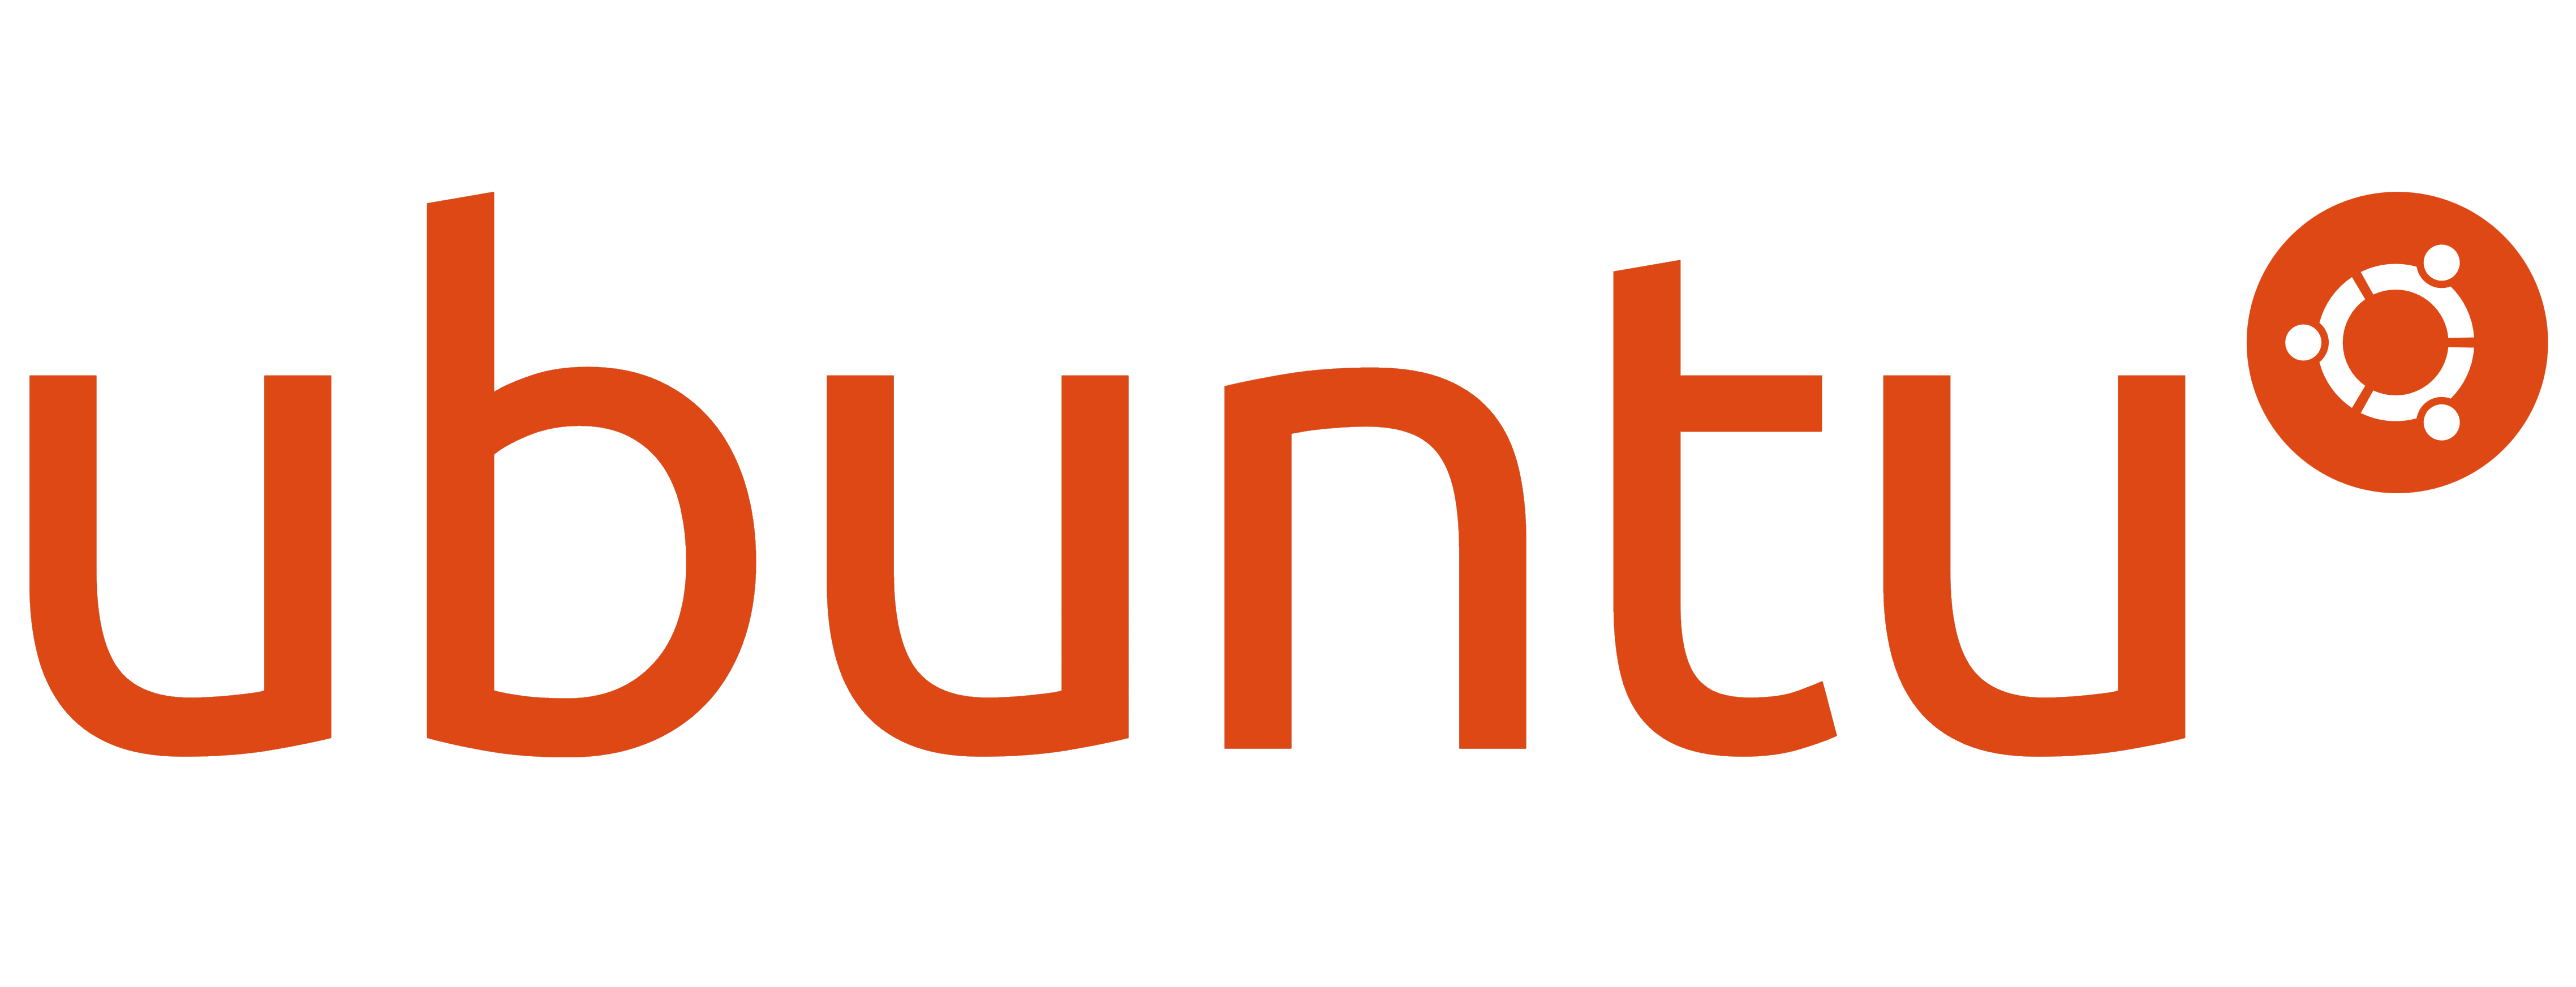 Ubuntu_logo_orange.png